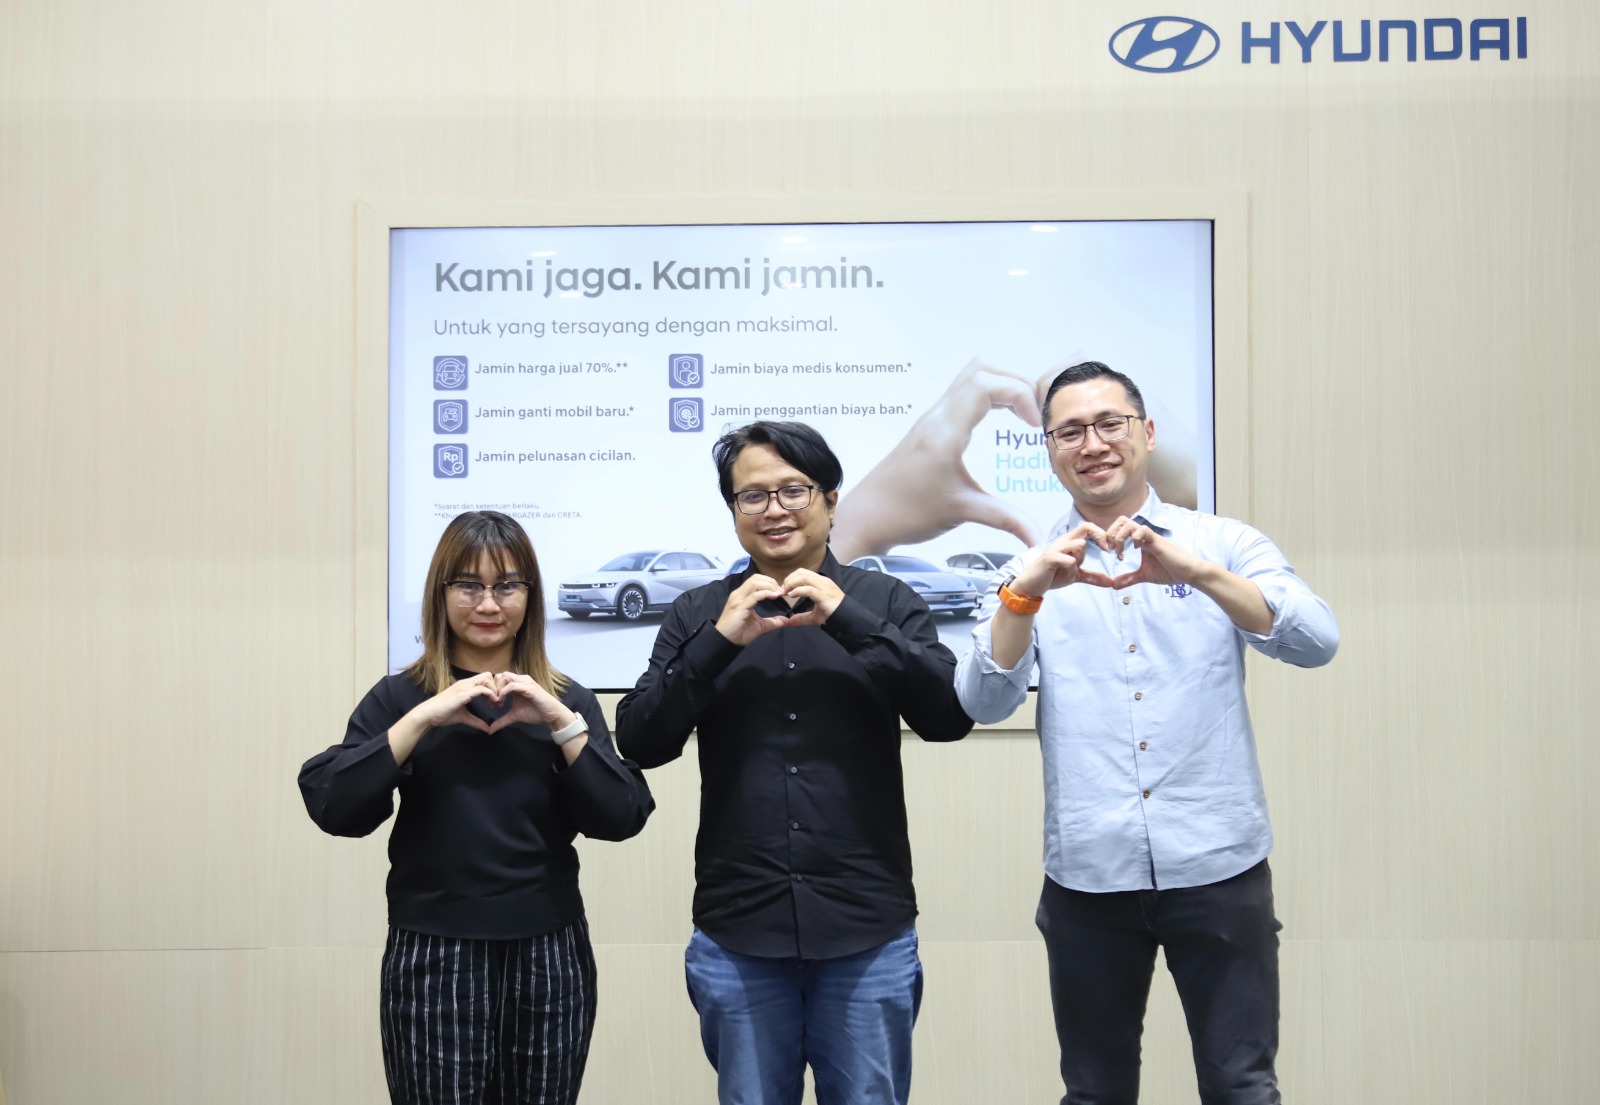 Hyundai Jamin Harga Jual Kembali Mobilnya 70% Dan Jaminan Ganti Mobil Baru